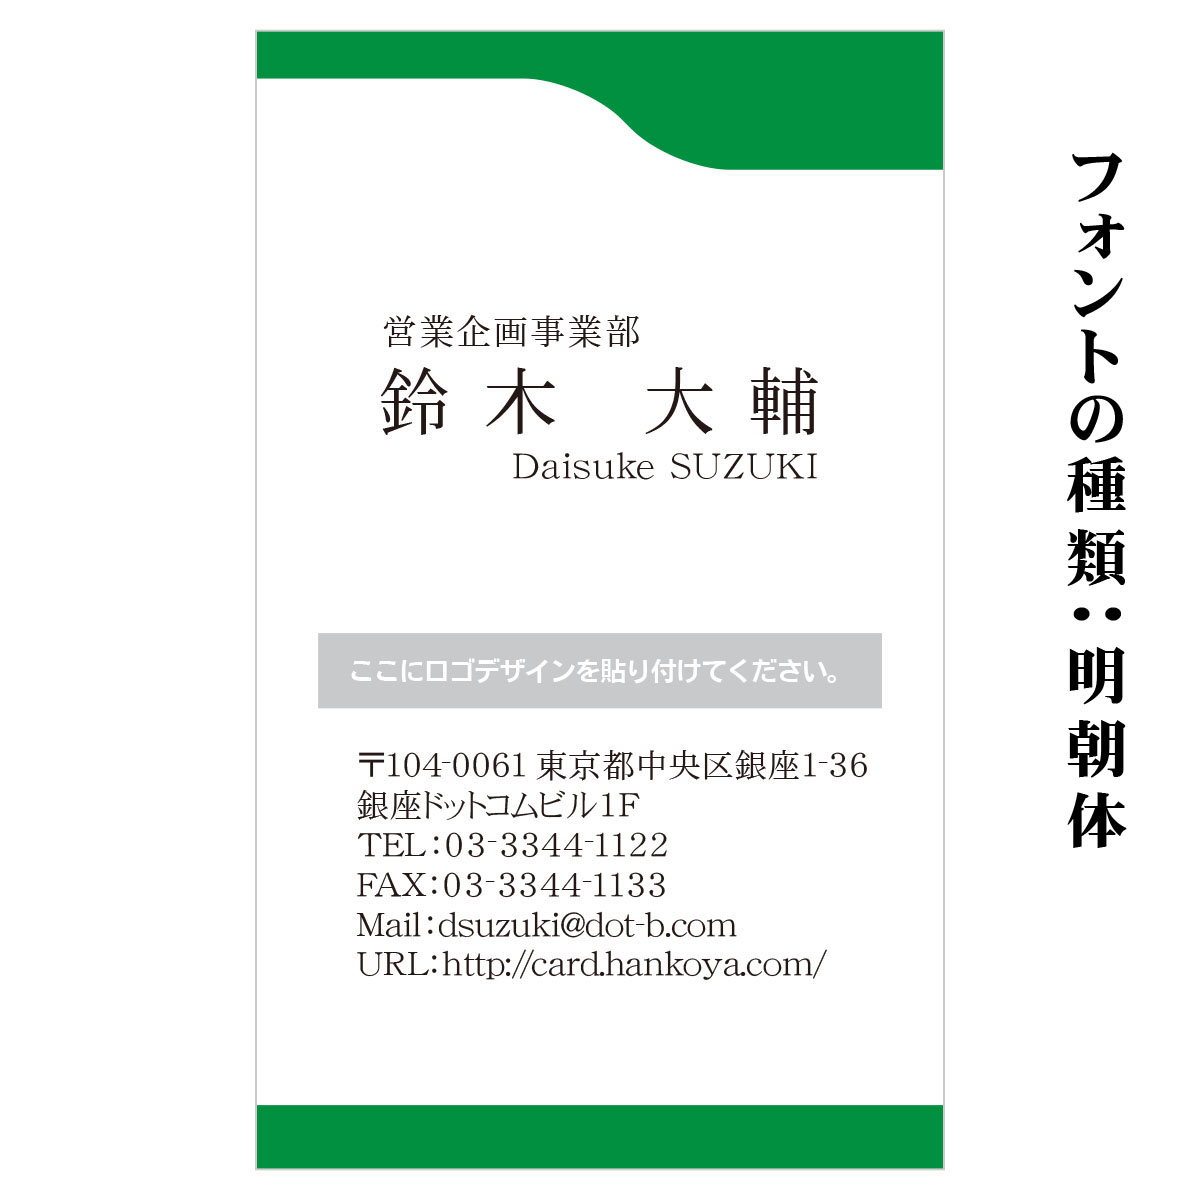 テキスト入稿名刺 タテ向き両面カラー印刷 HO-01 英語表記